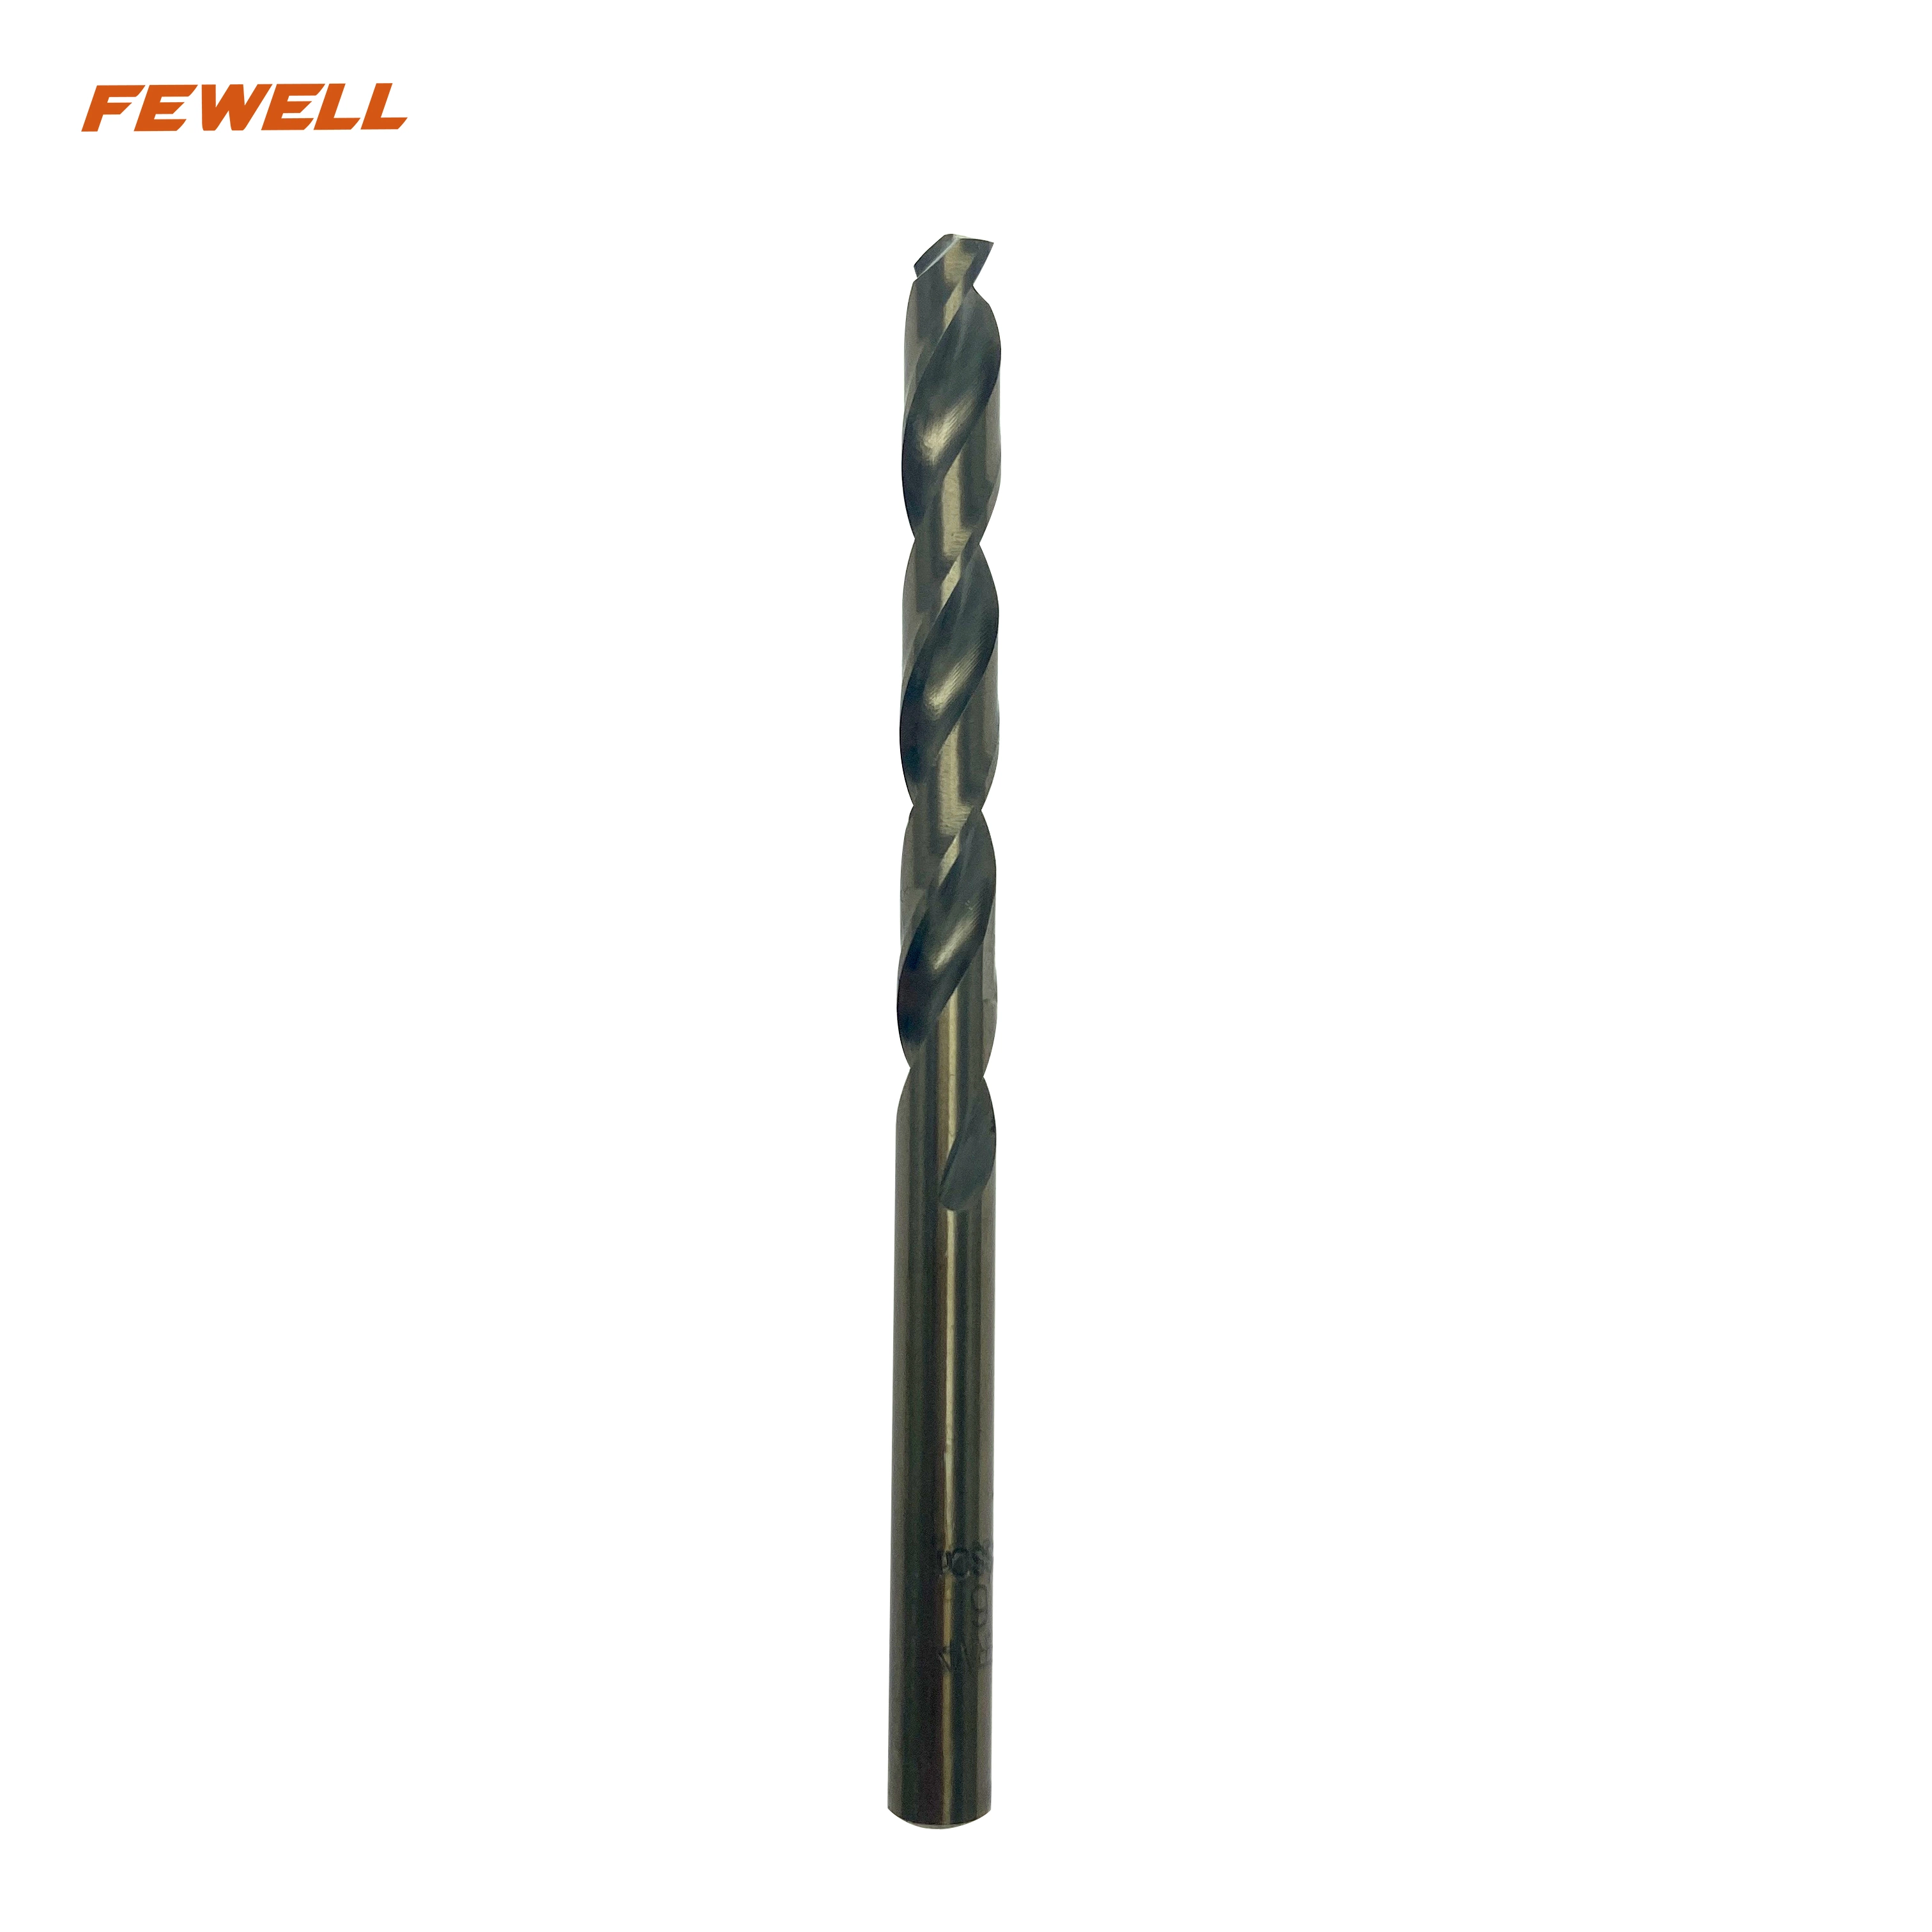 6mm M2 6542 HSS High Speed Steel Twist Drill Bits for Drilling Metal Iron Aluminum